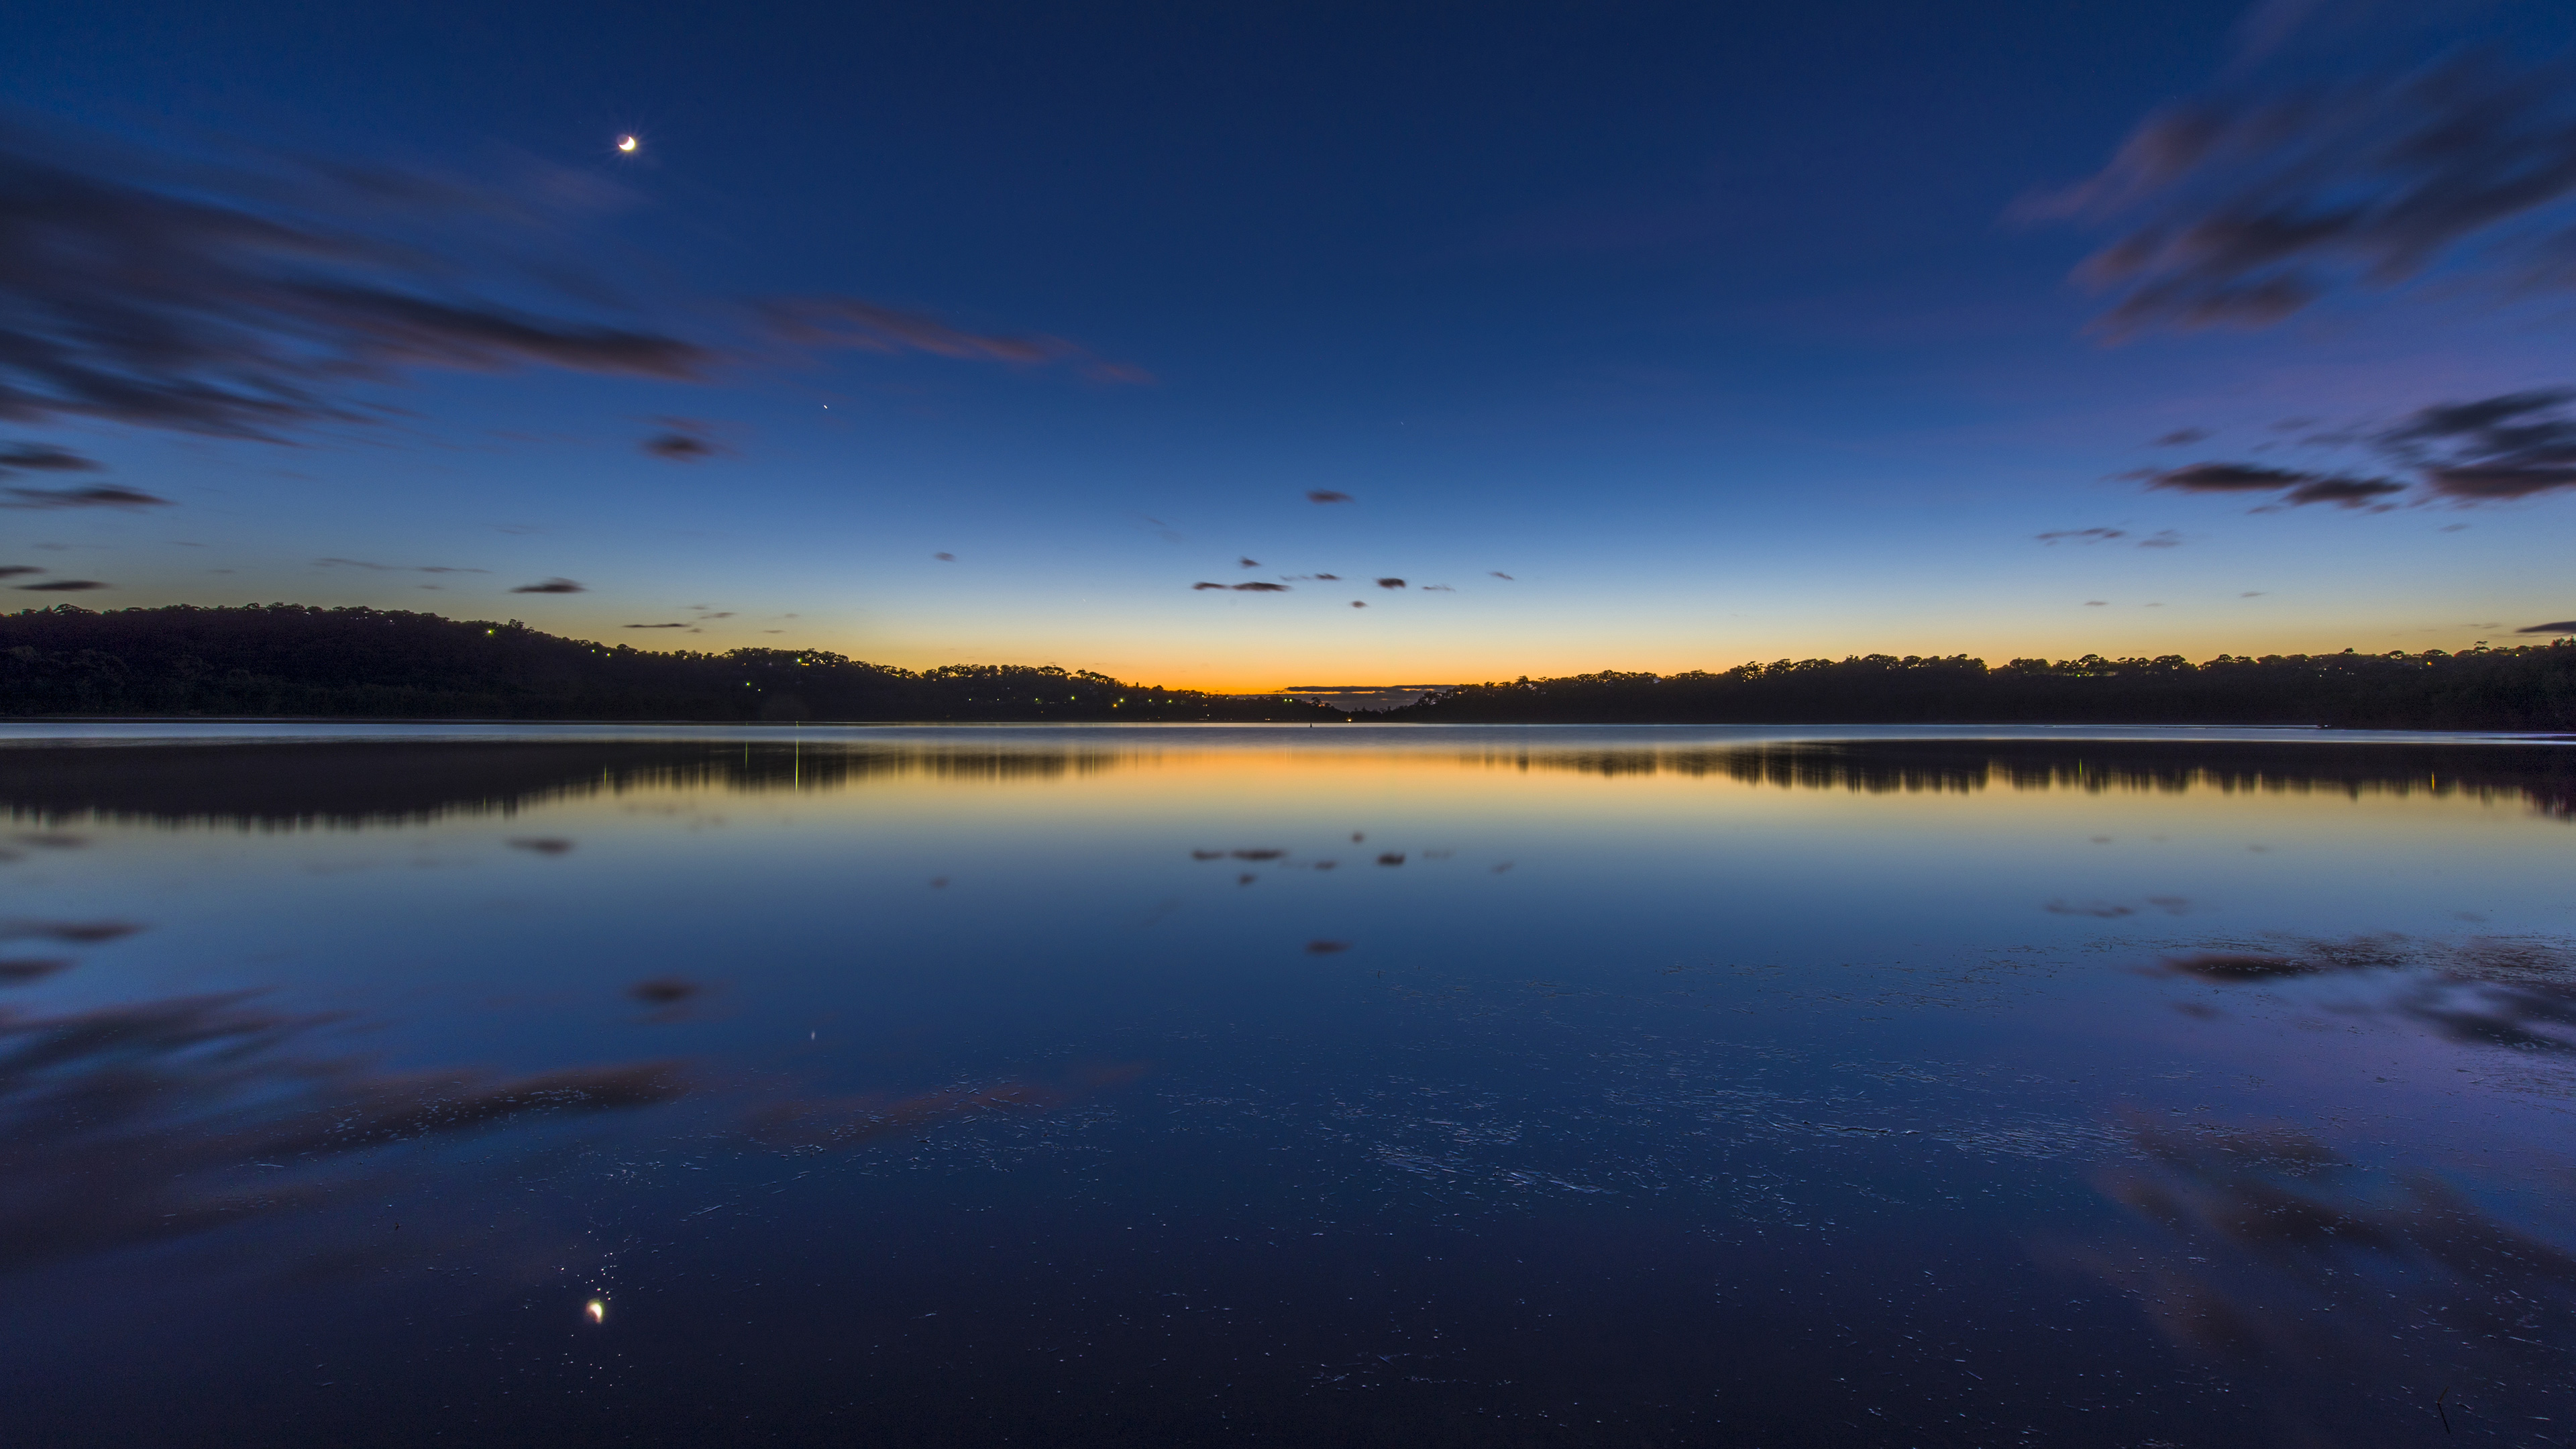 Bạn đang tìm kiếm hình nền 4K hồ Narrabeen tuyệt đẹp? Bức ảnh này là lựa chọn hoàn hảo với độ sắc nét và chi tiết cao, giúp bạn truyền tải cảm giác thư thái và bình yên. Hãy tải về và trải nghiệm ngay!